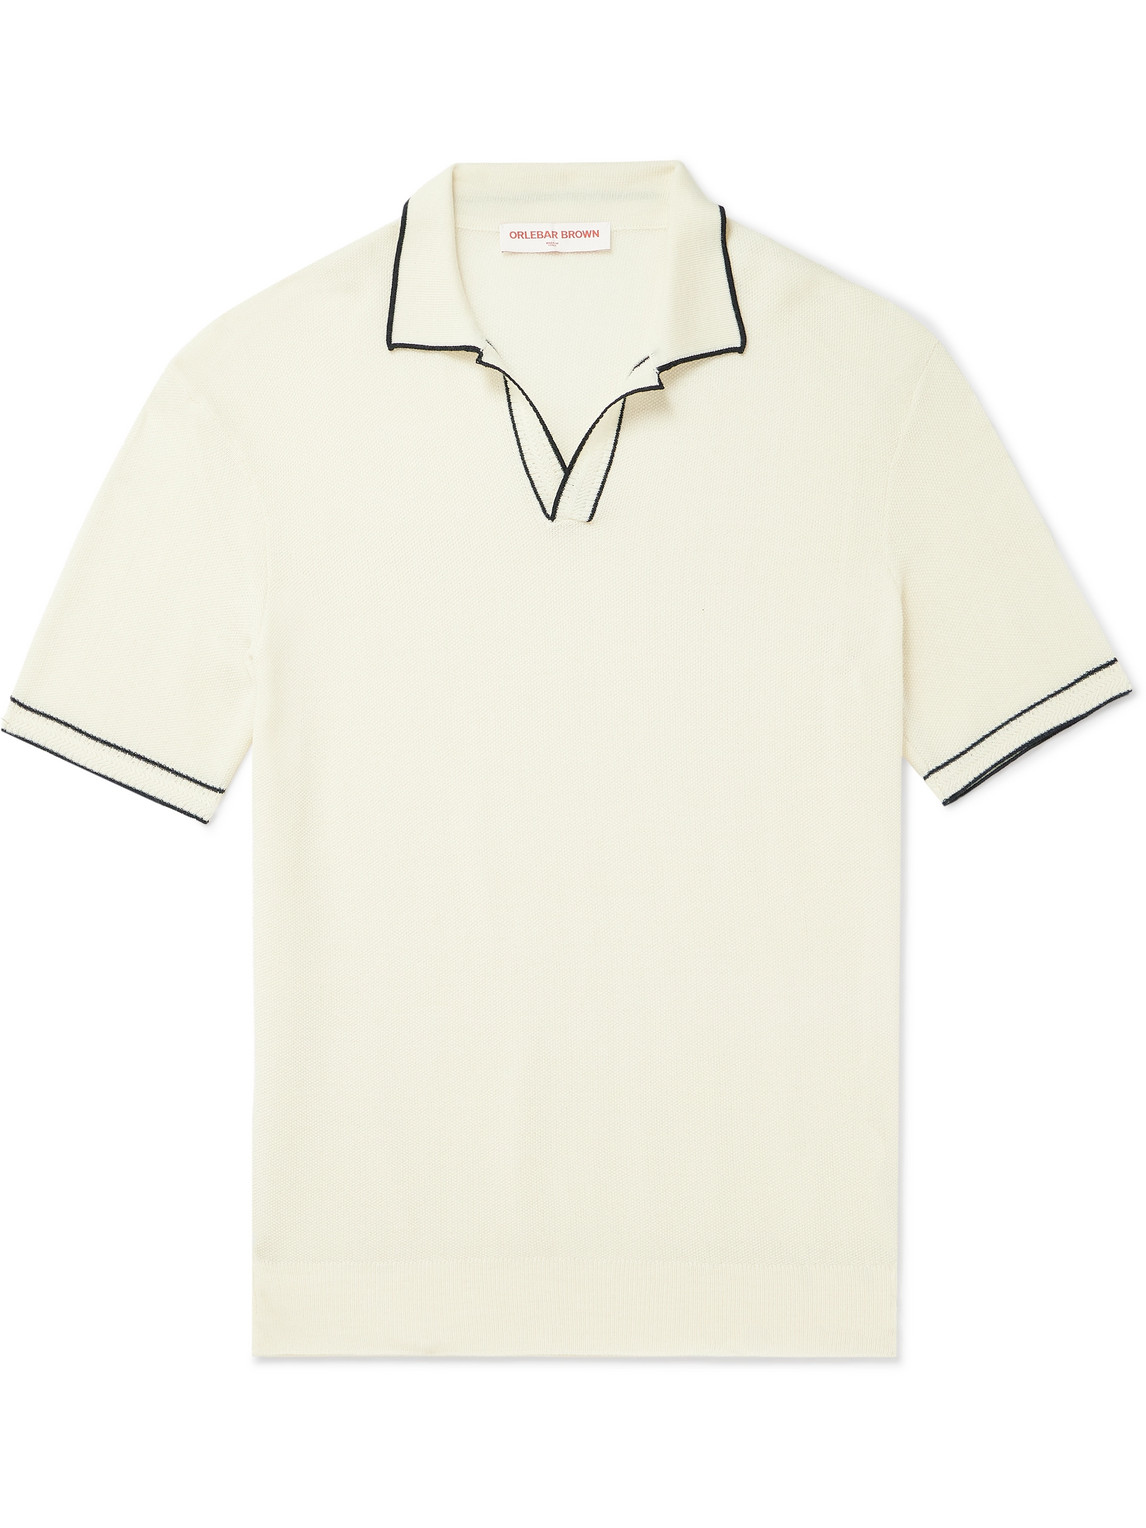 Orlebar Brown Horton Merino Wool Polo Shirt In White